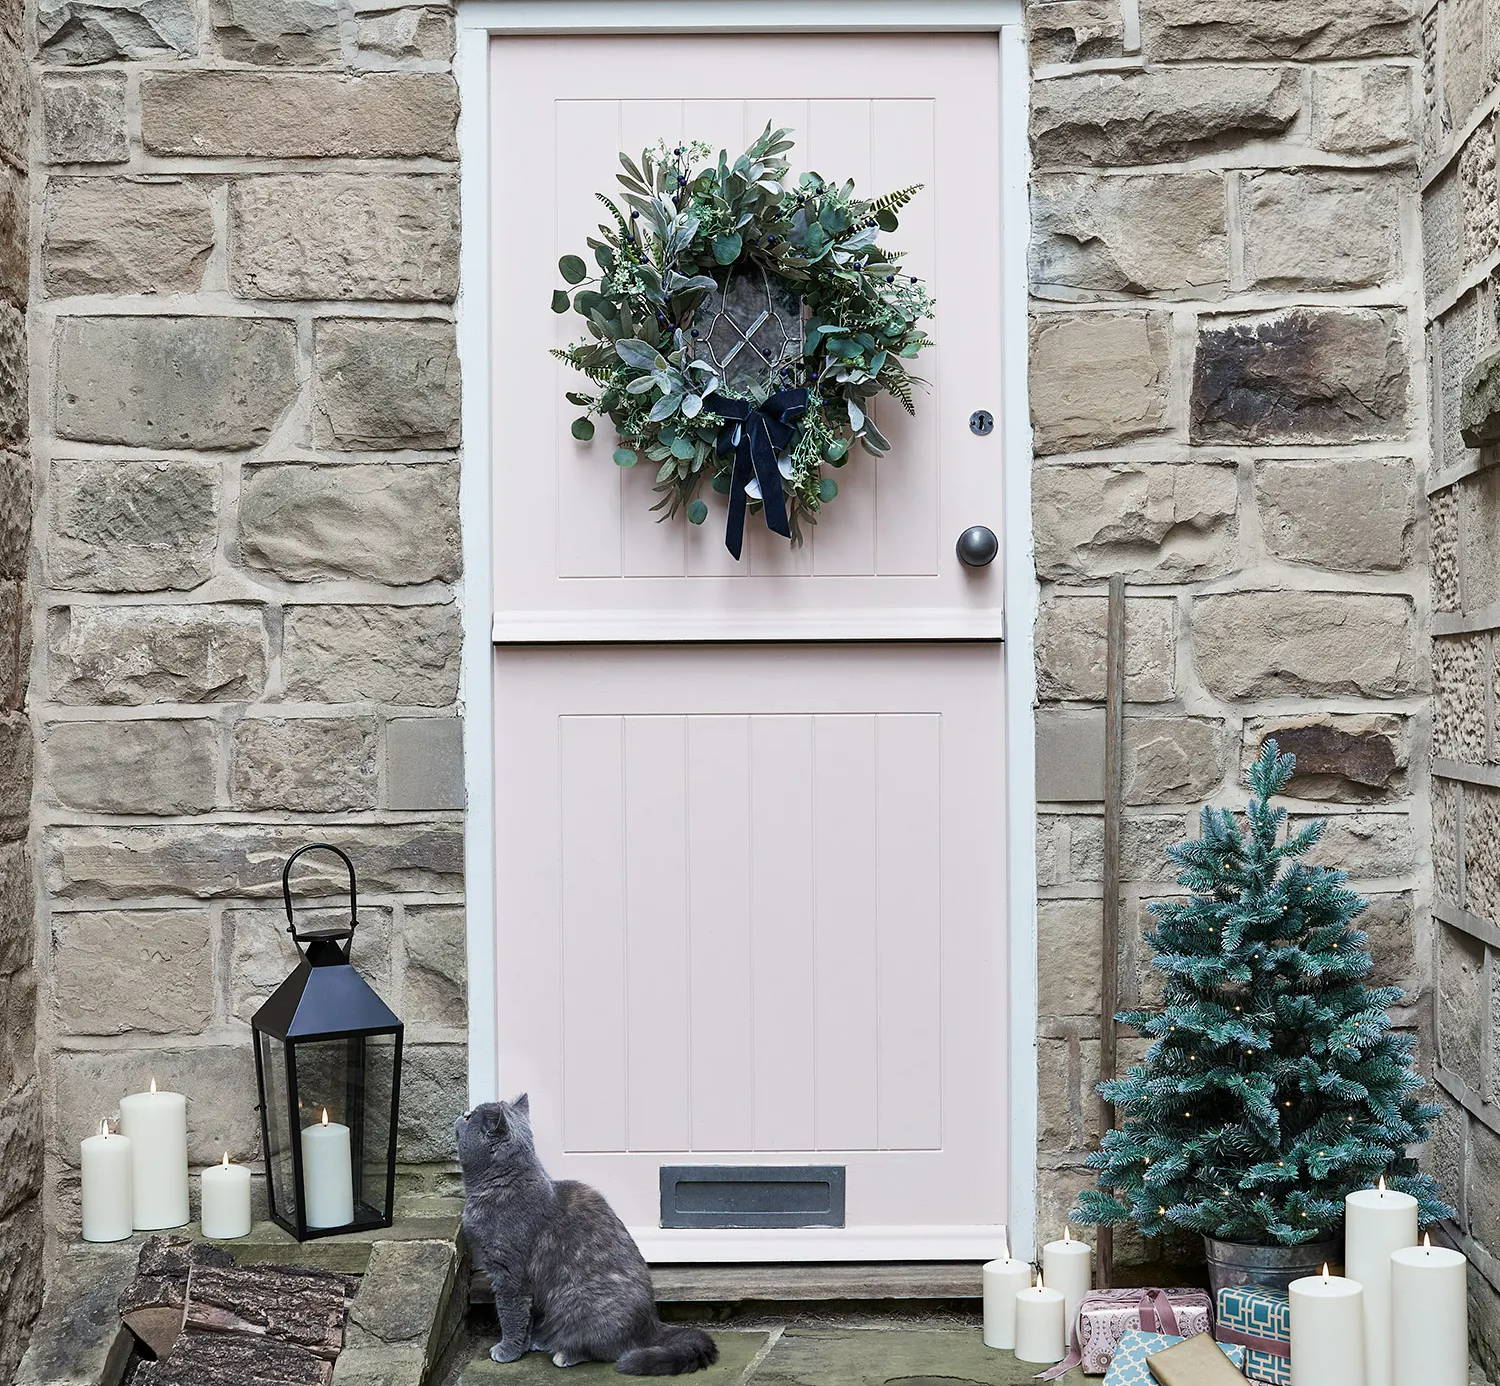 Festlich geschmückter Eingangsbereich mit Weihnachtskranz, LED Kerzen und Mini Weihnachtsbaum, vor der Haustür sitzt eine Katze